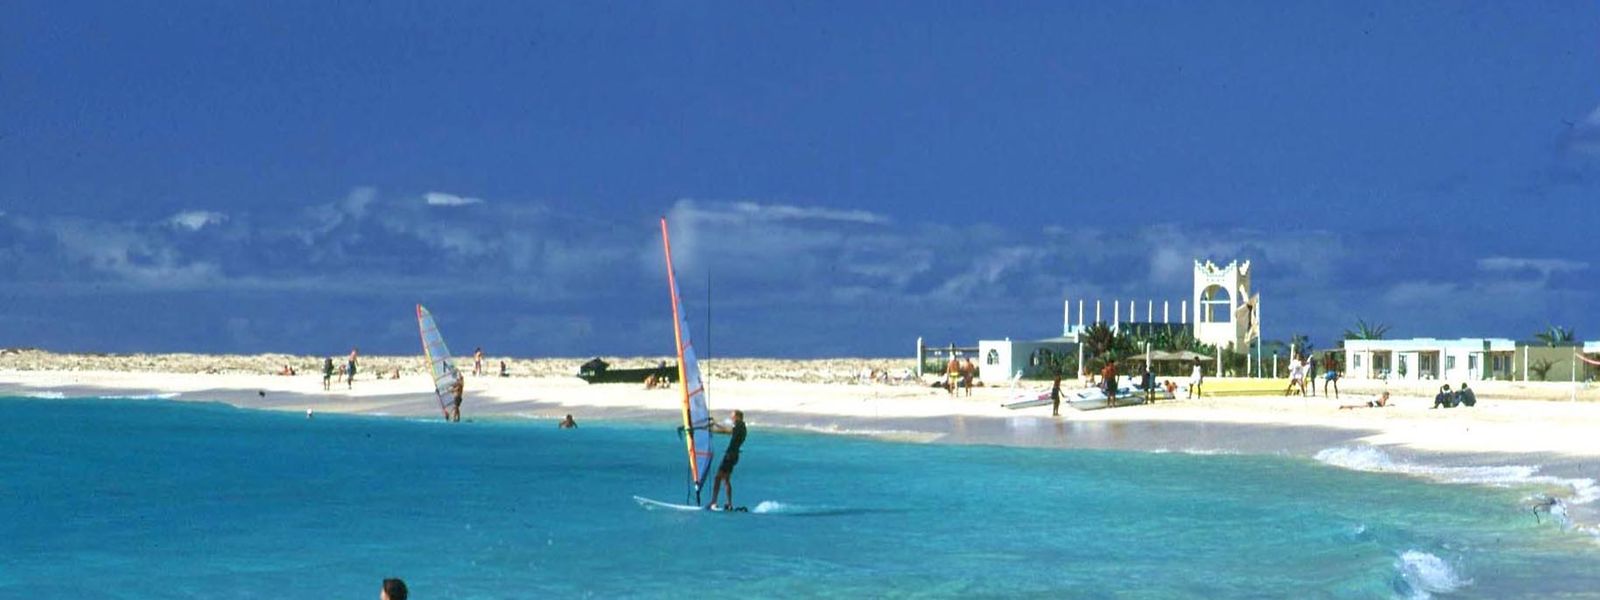 Feinster Sand und türkisblaues Wasser erwarten die Gäste  am Strand der kleinen Stadt  Santa Maria auf Sal, einer der Kapverdischen Inseln.
                              

